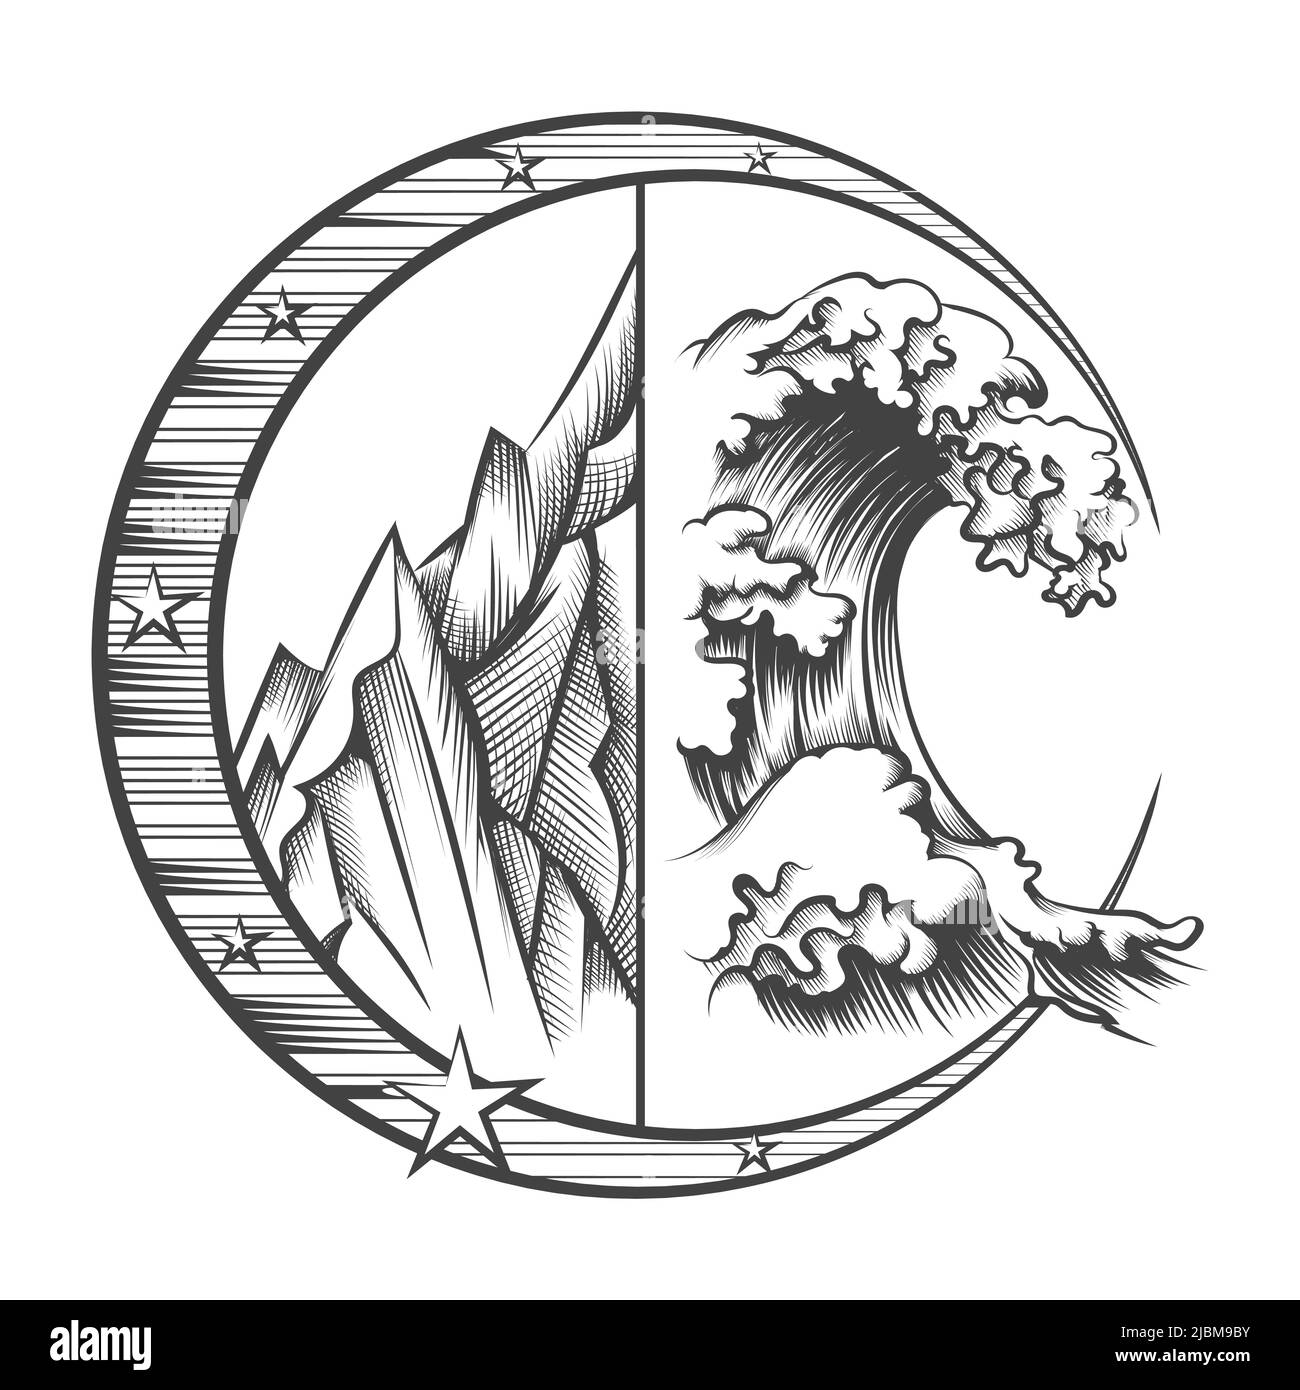 L'emblème de la nature sauvage de la montagne et de la vague dessiné dans le style engraving isolé sur blanc. Illustration vectorielle. Illustration de Vecteur